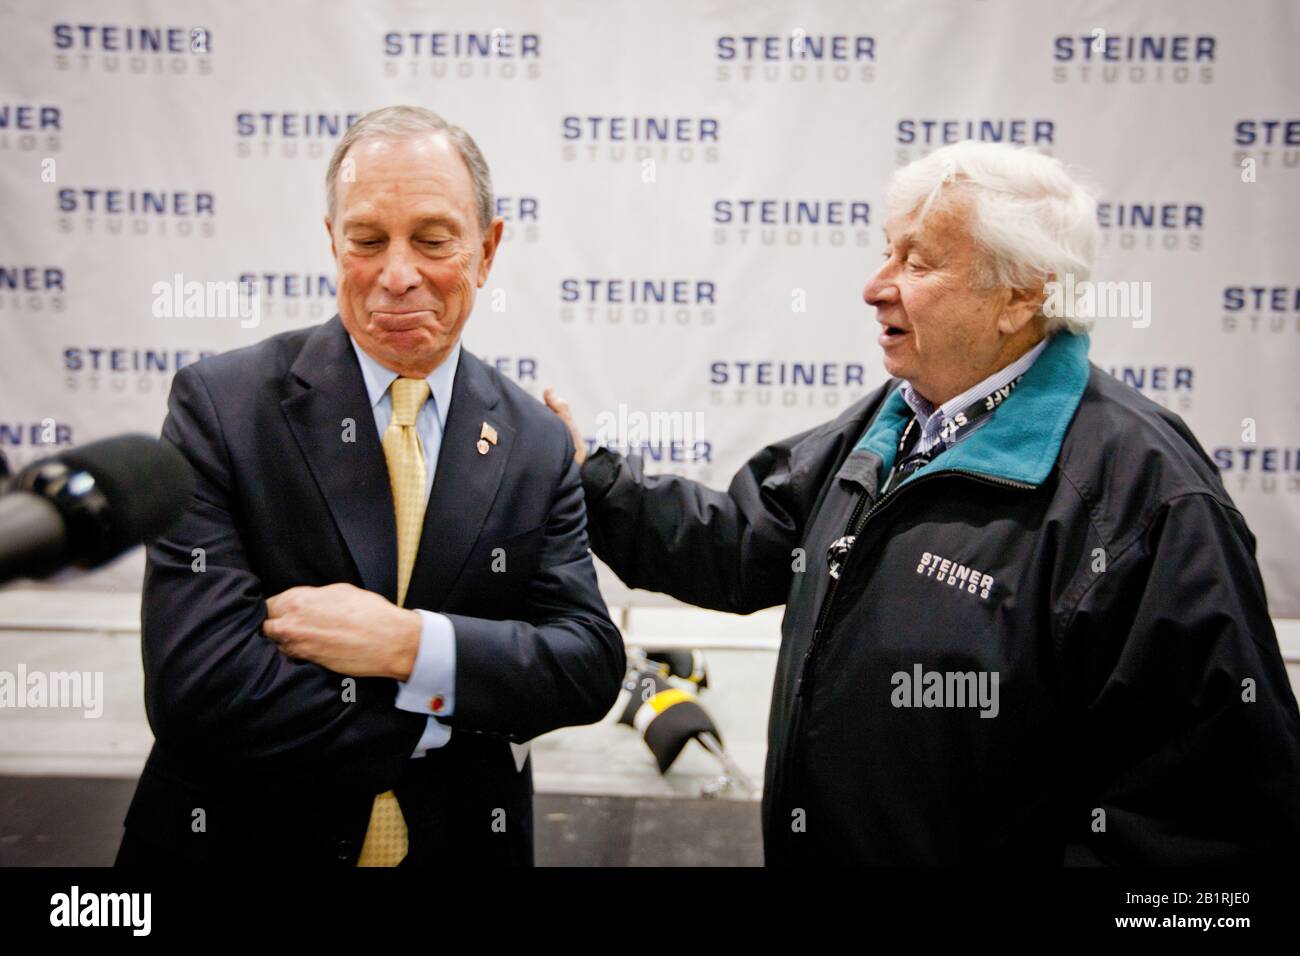 Il sindaco di New York Michael J. Bloomberg insieme a David Steiner all'apertura dei nuovi Steiner Studios a Brooklyn Navy Yard. New York ha sempre avuto una fiorente industria cinematografica, ma in forte competizione con le città della costa occidentale e del Canada. Foto Stock